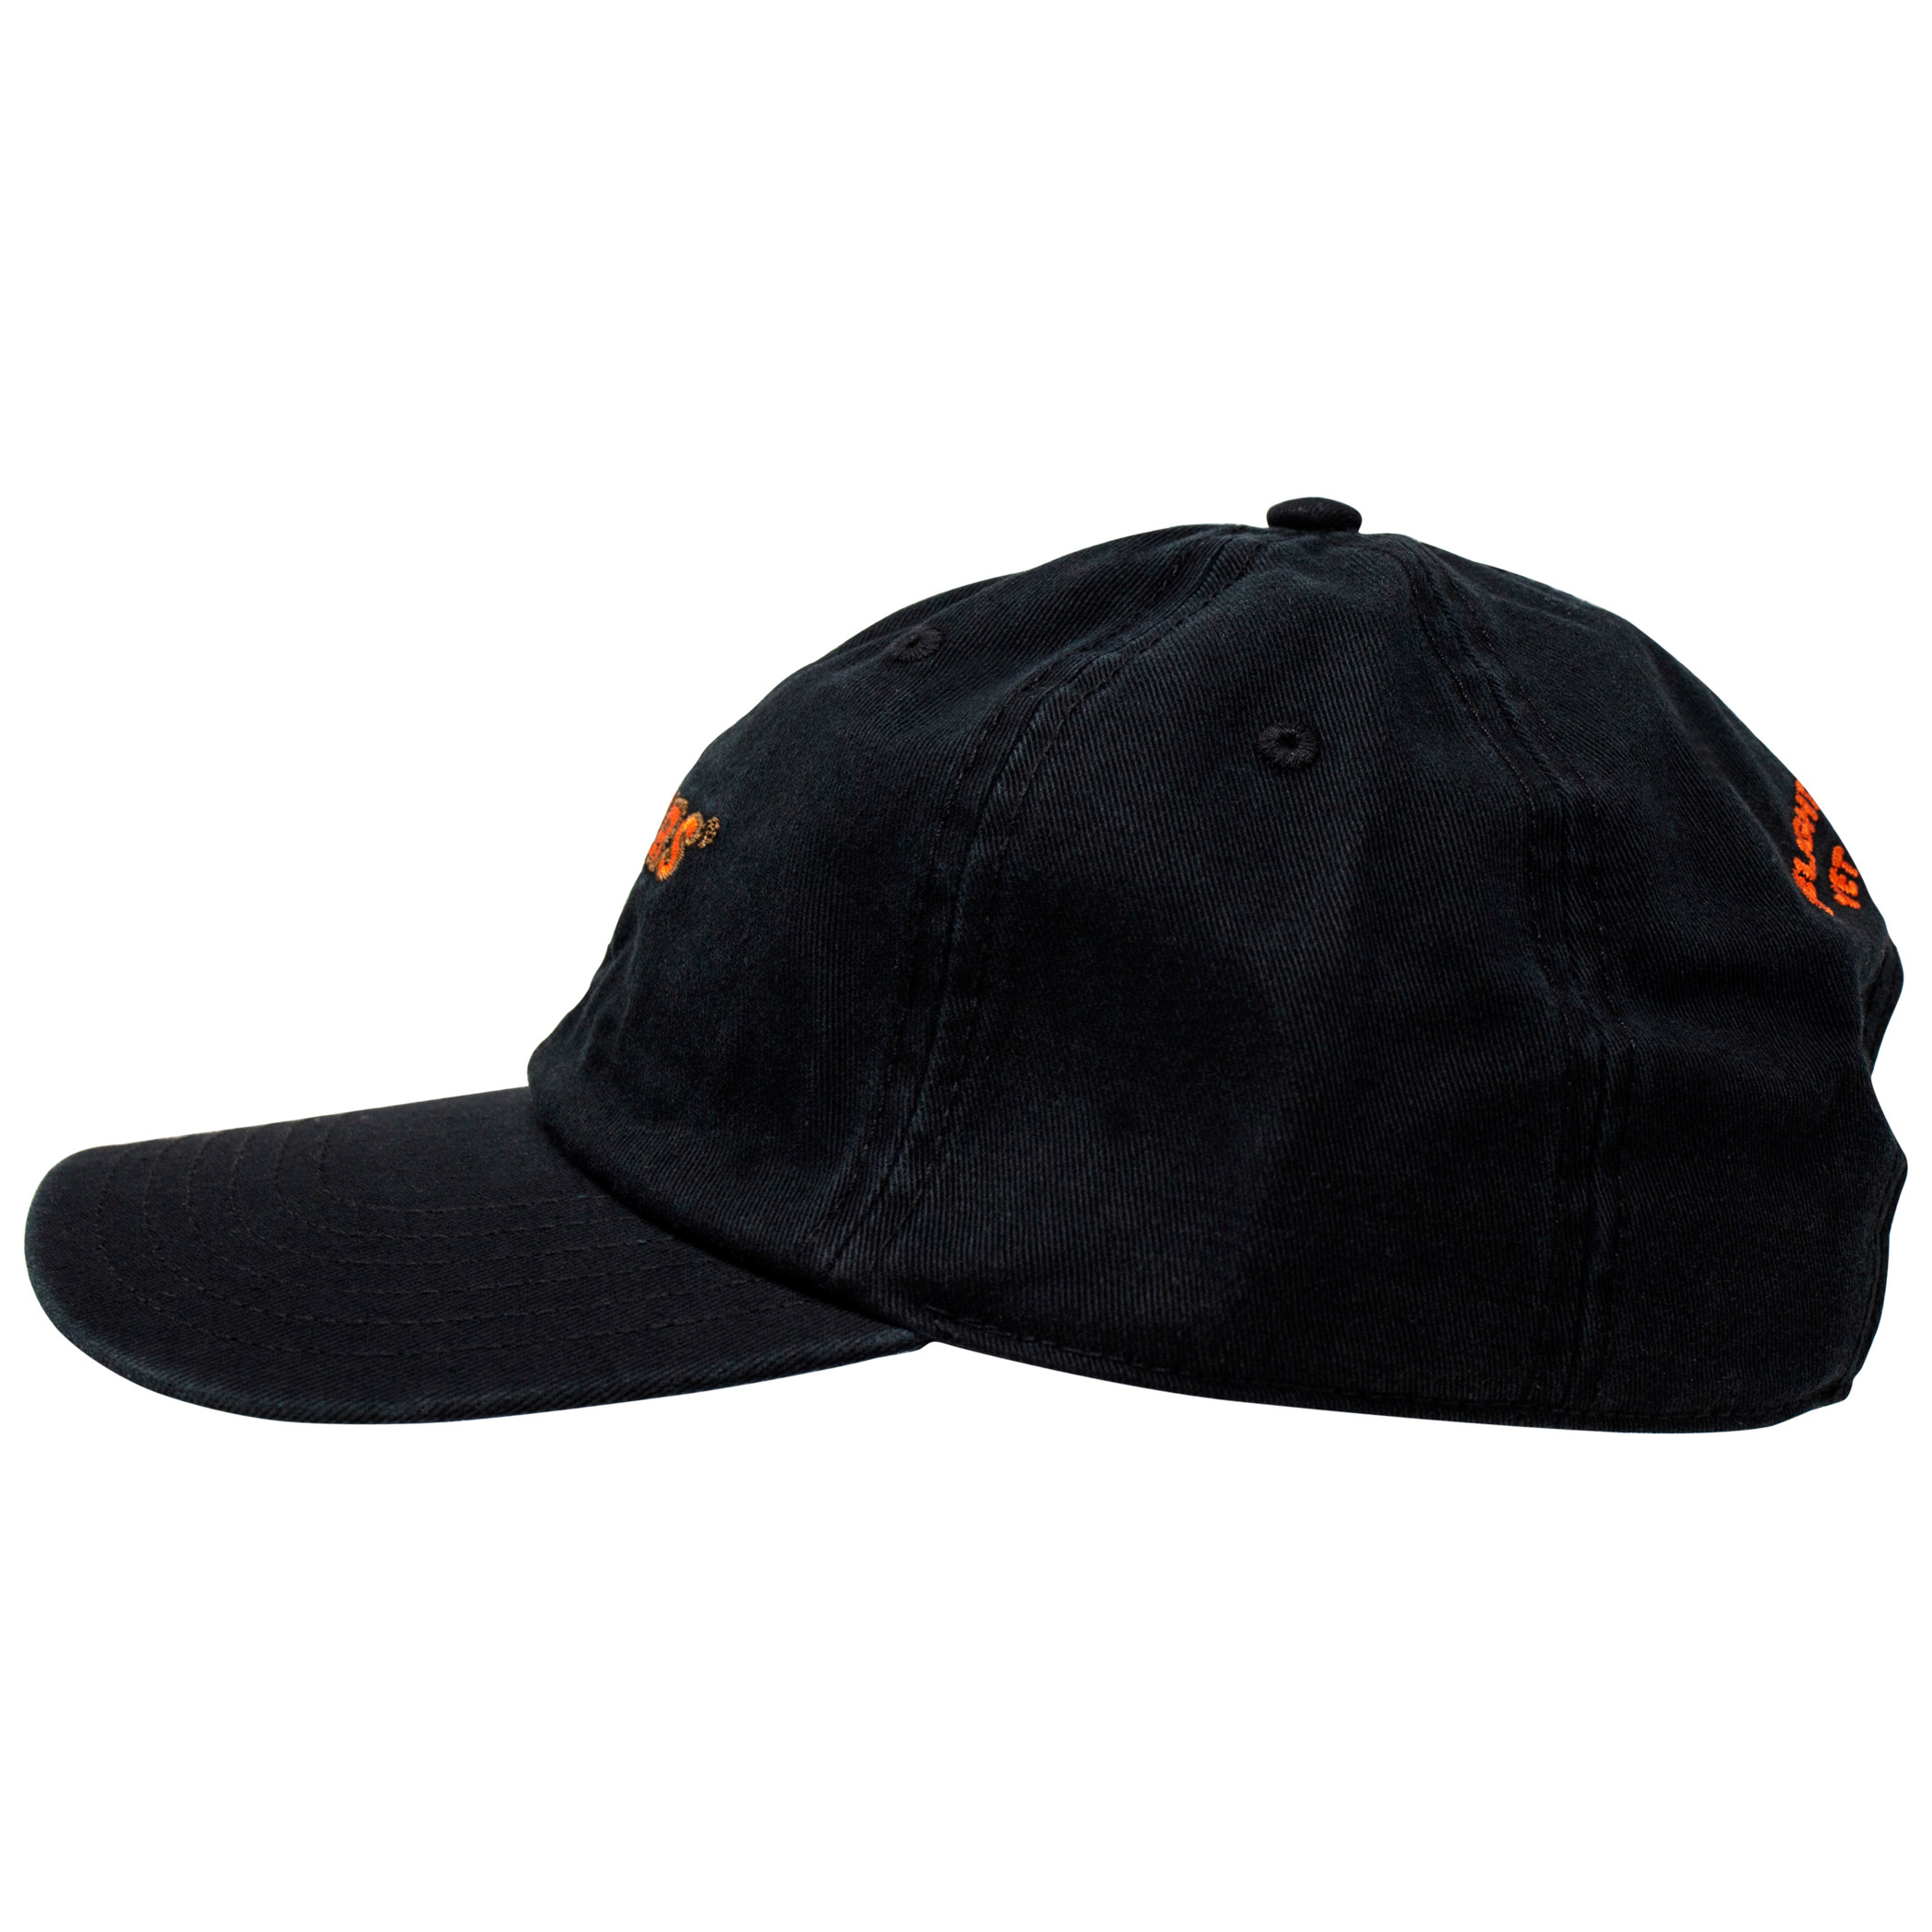 Hooters Logo Adjustable Dad Hat